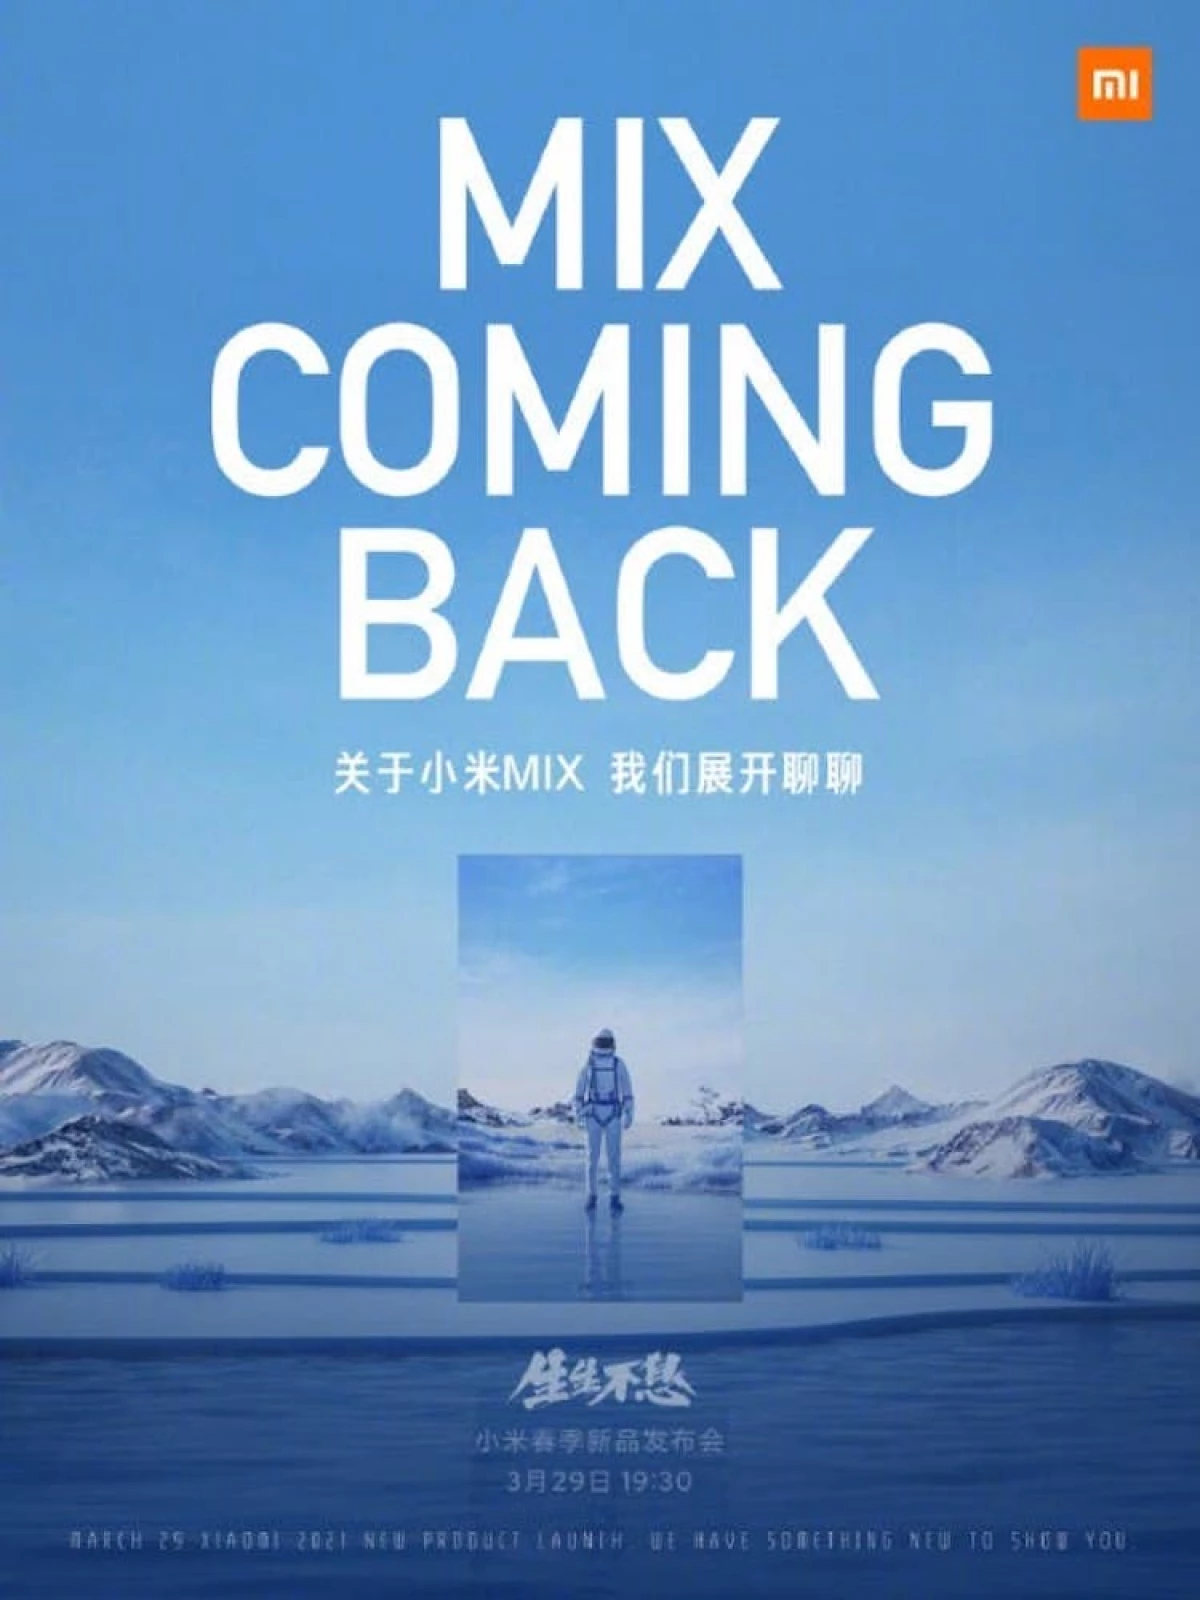 Marso 29, ipakilala ng Xiaomi ang tatlong nangungunang smartphone nang sabay-sabay. Mi mix returns! 7891_3